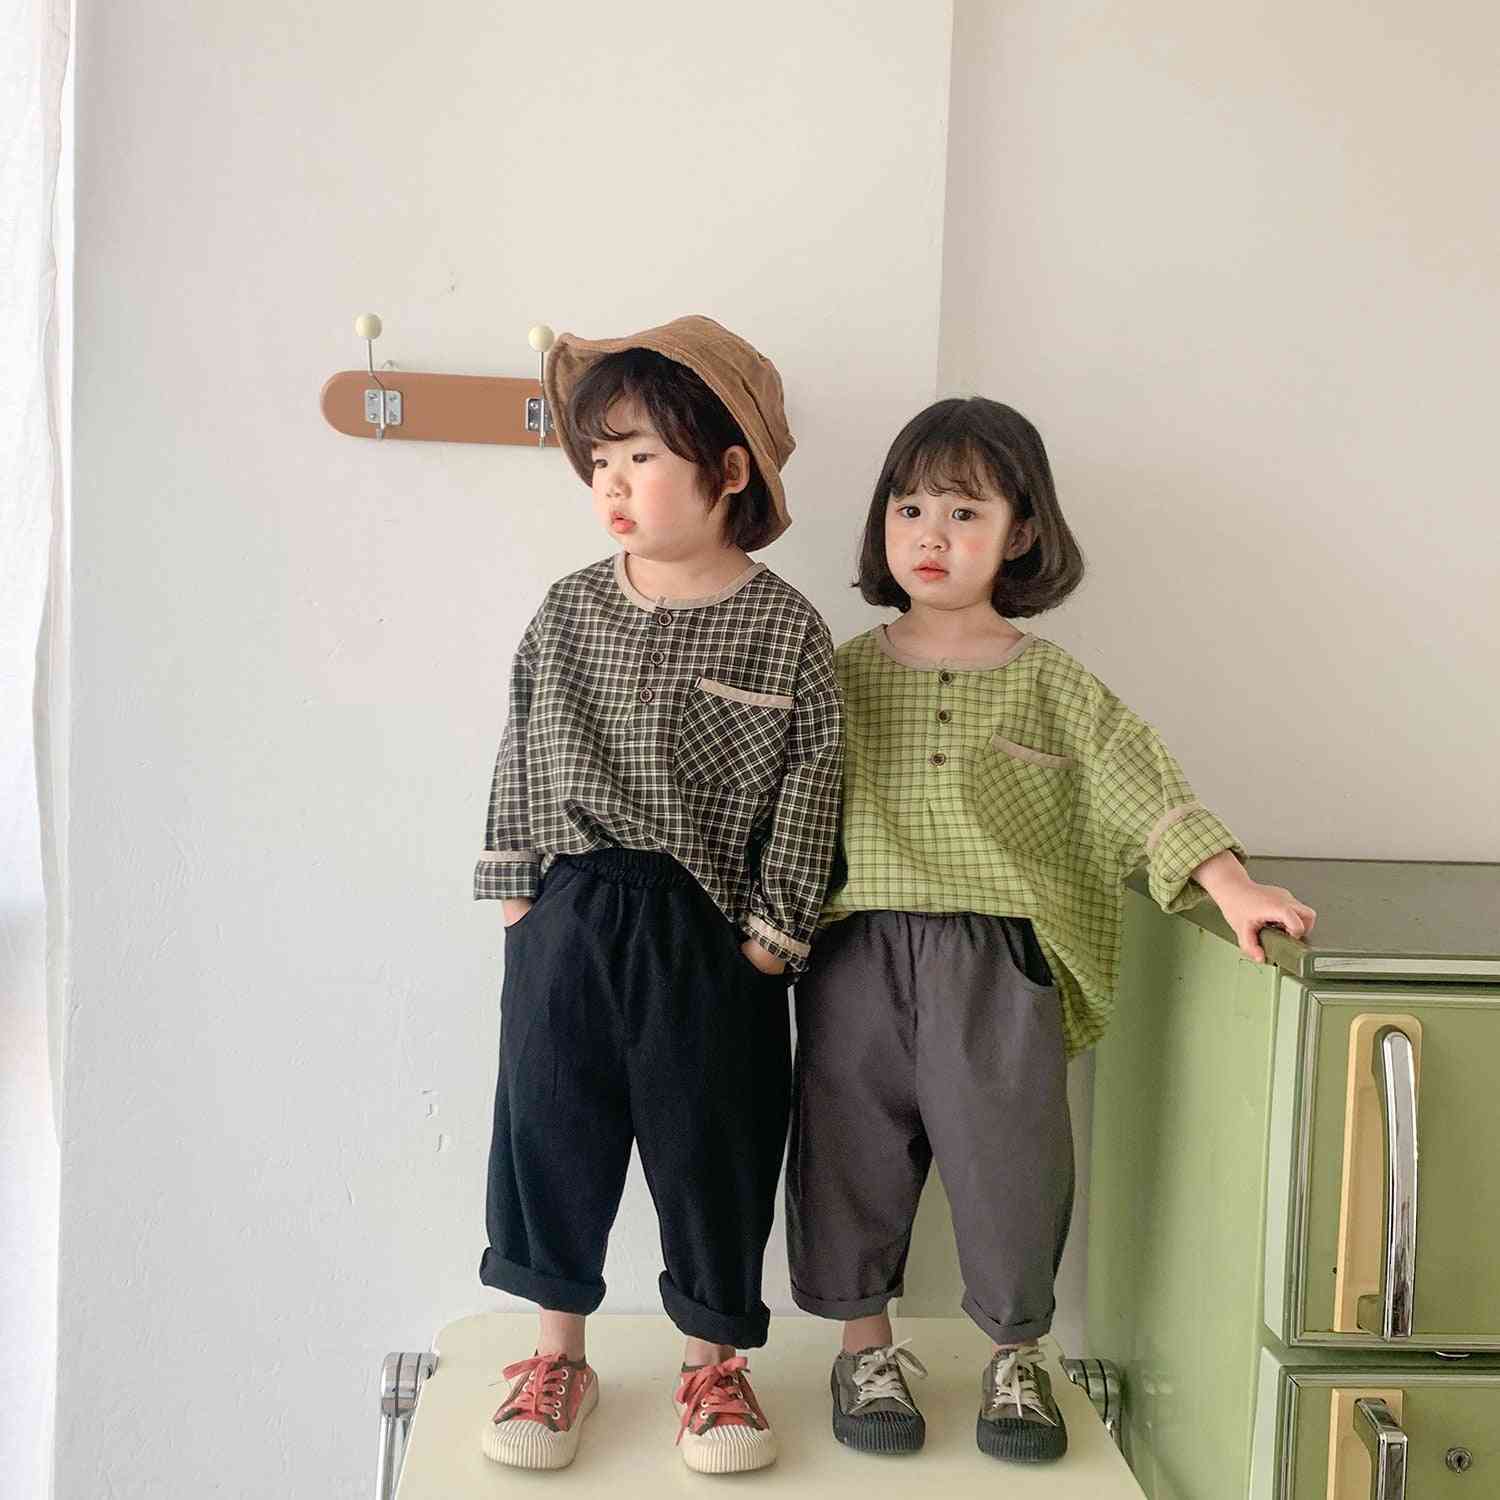 Korealaistyyliset yksiväriset leveät rennot housut